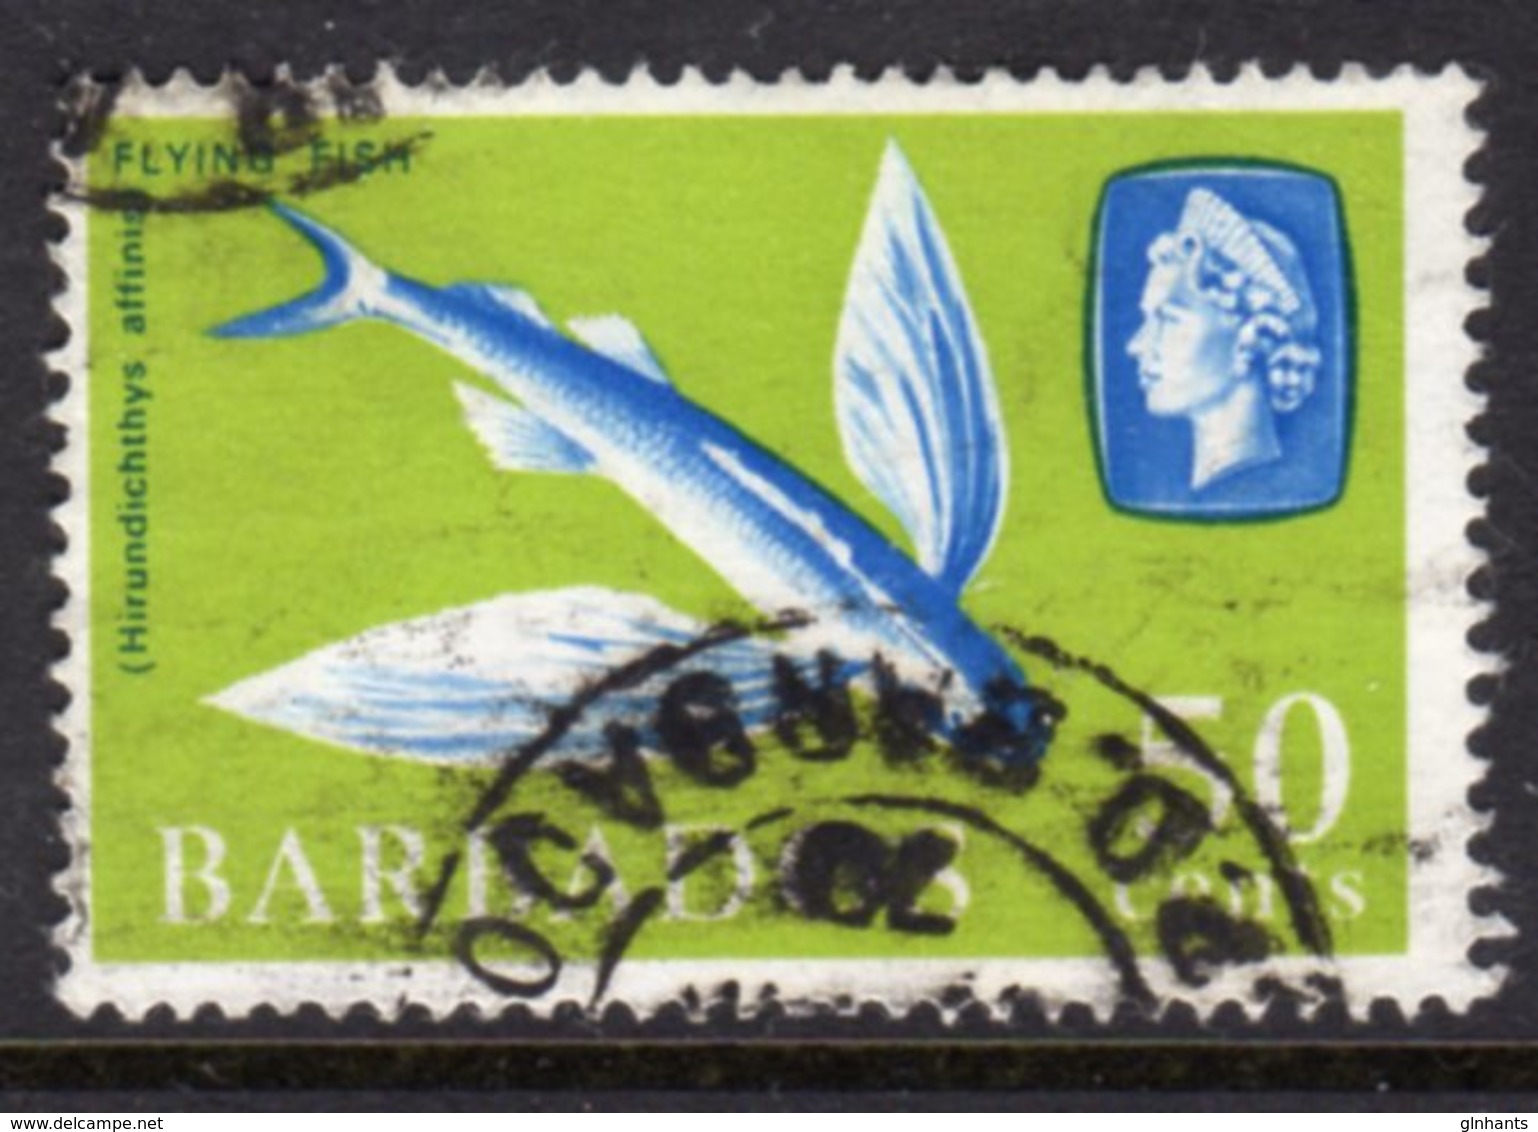 BARBADOS - 1966 50c DEFINITIVE STAMP WMK W12 SIDEWAYS REF B USED SG 353 - Barbados (...-1966)